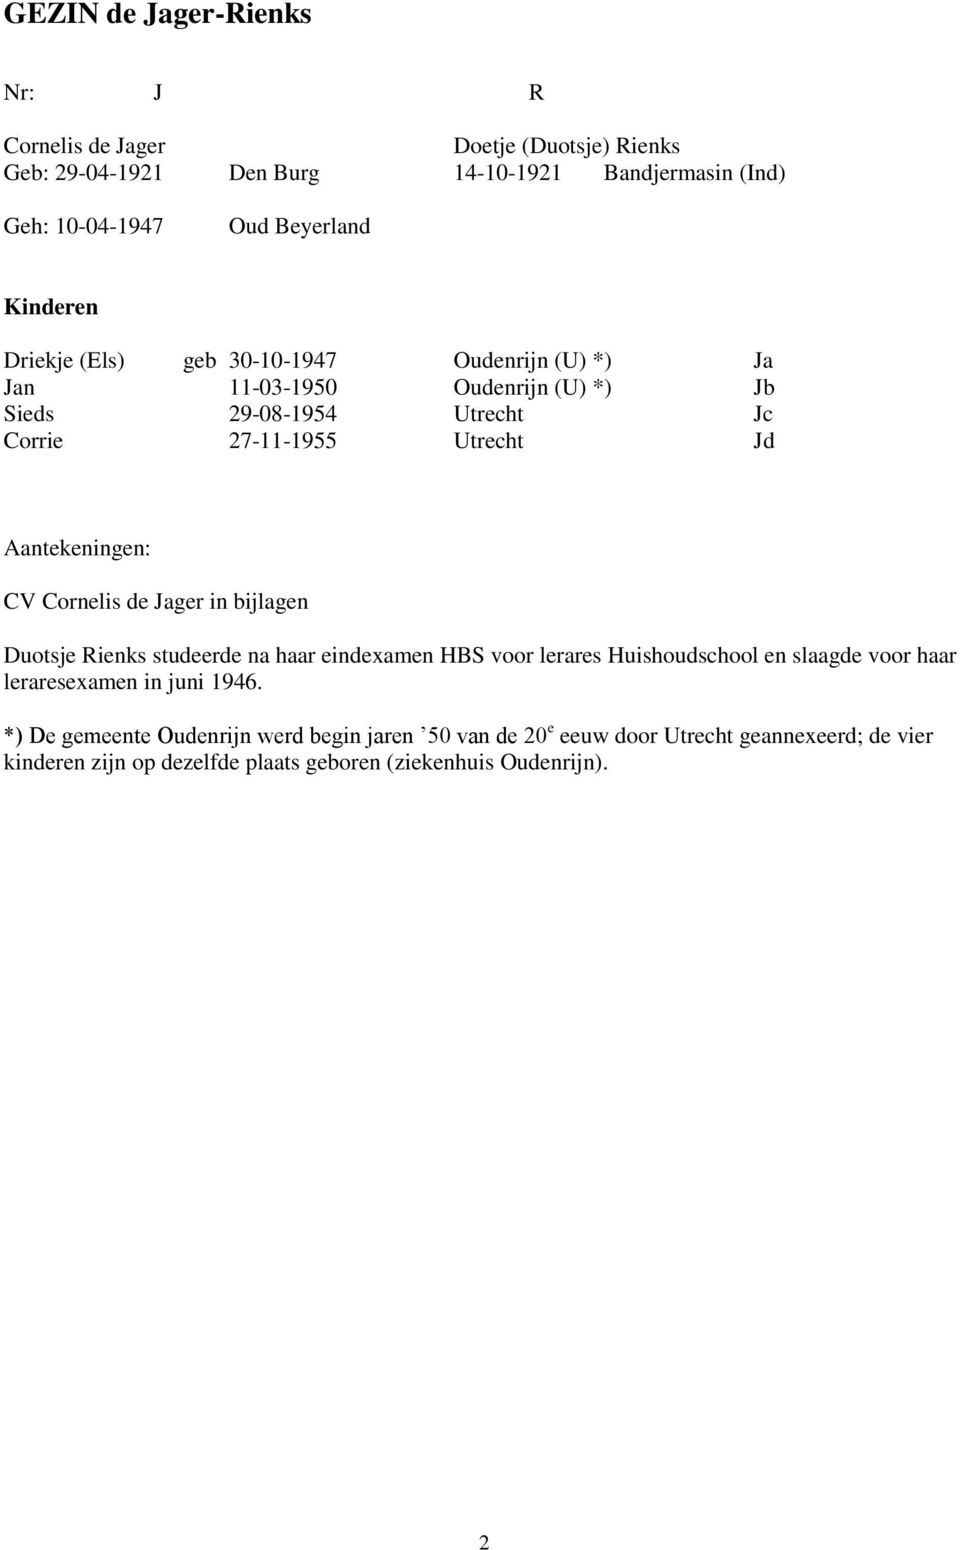 Aantekeningen: CV Cornelis de Jager in bijlagen Duotsje Rienks studeerde na haar eindexamen HBS voor lerares Huishoudschool en slaagde voor haar leraresexamen